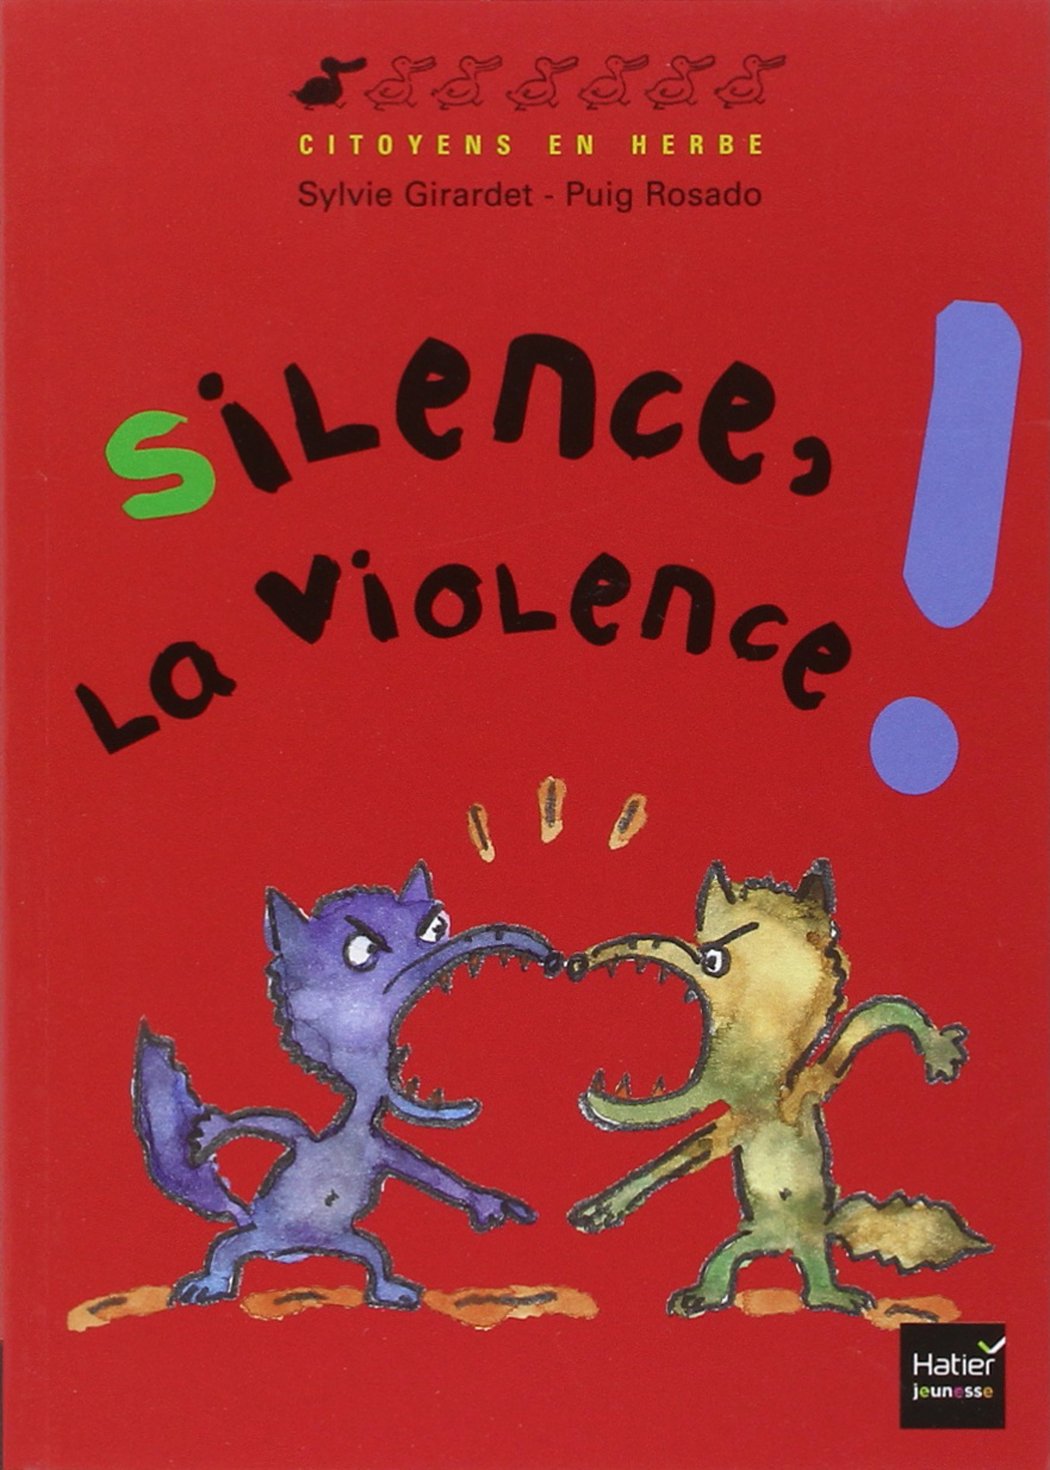 Silence la violence